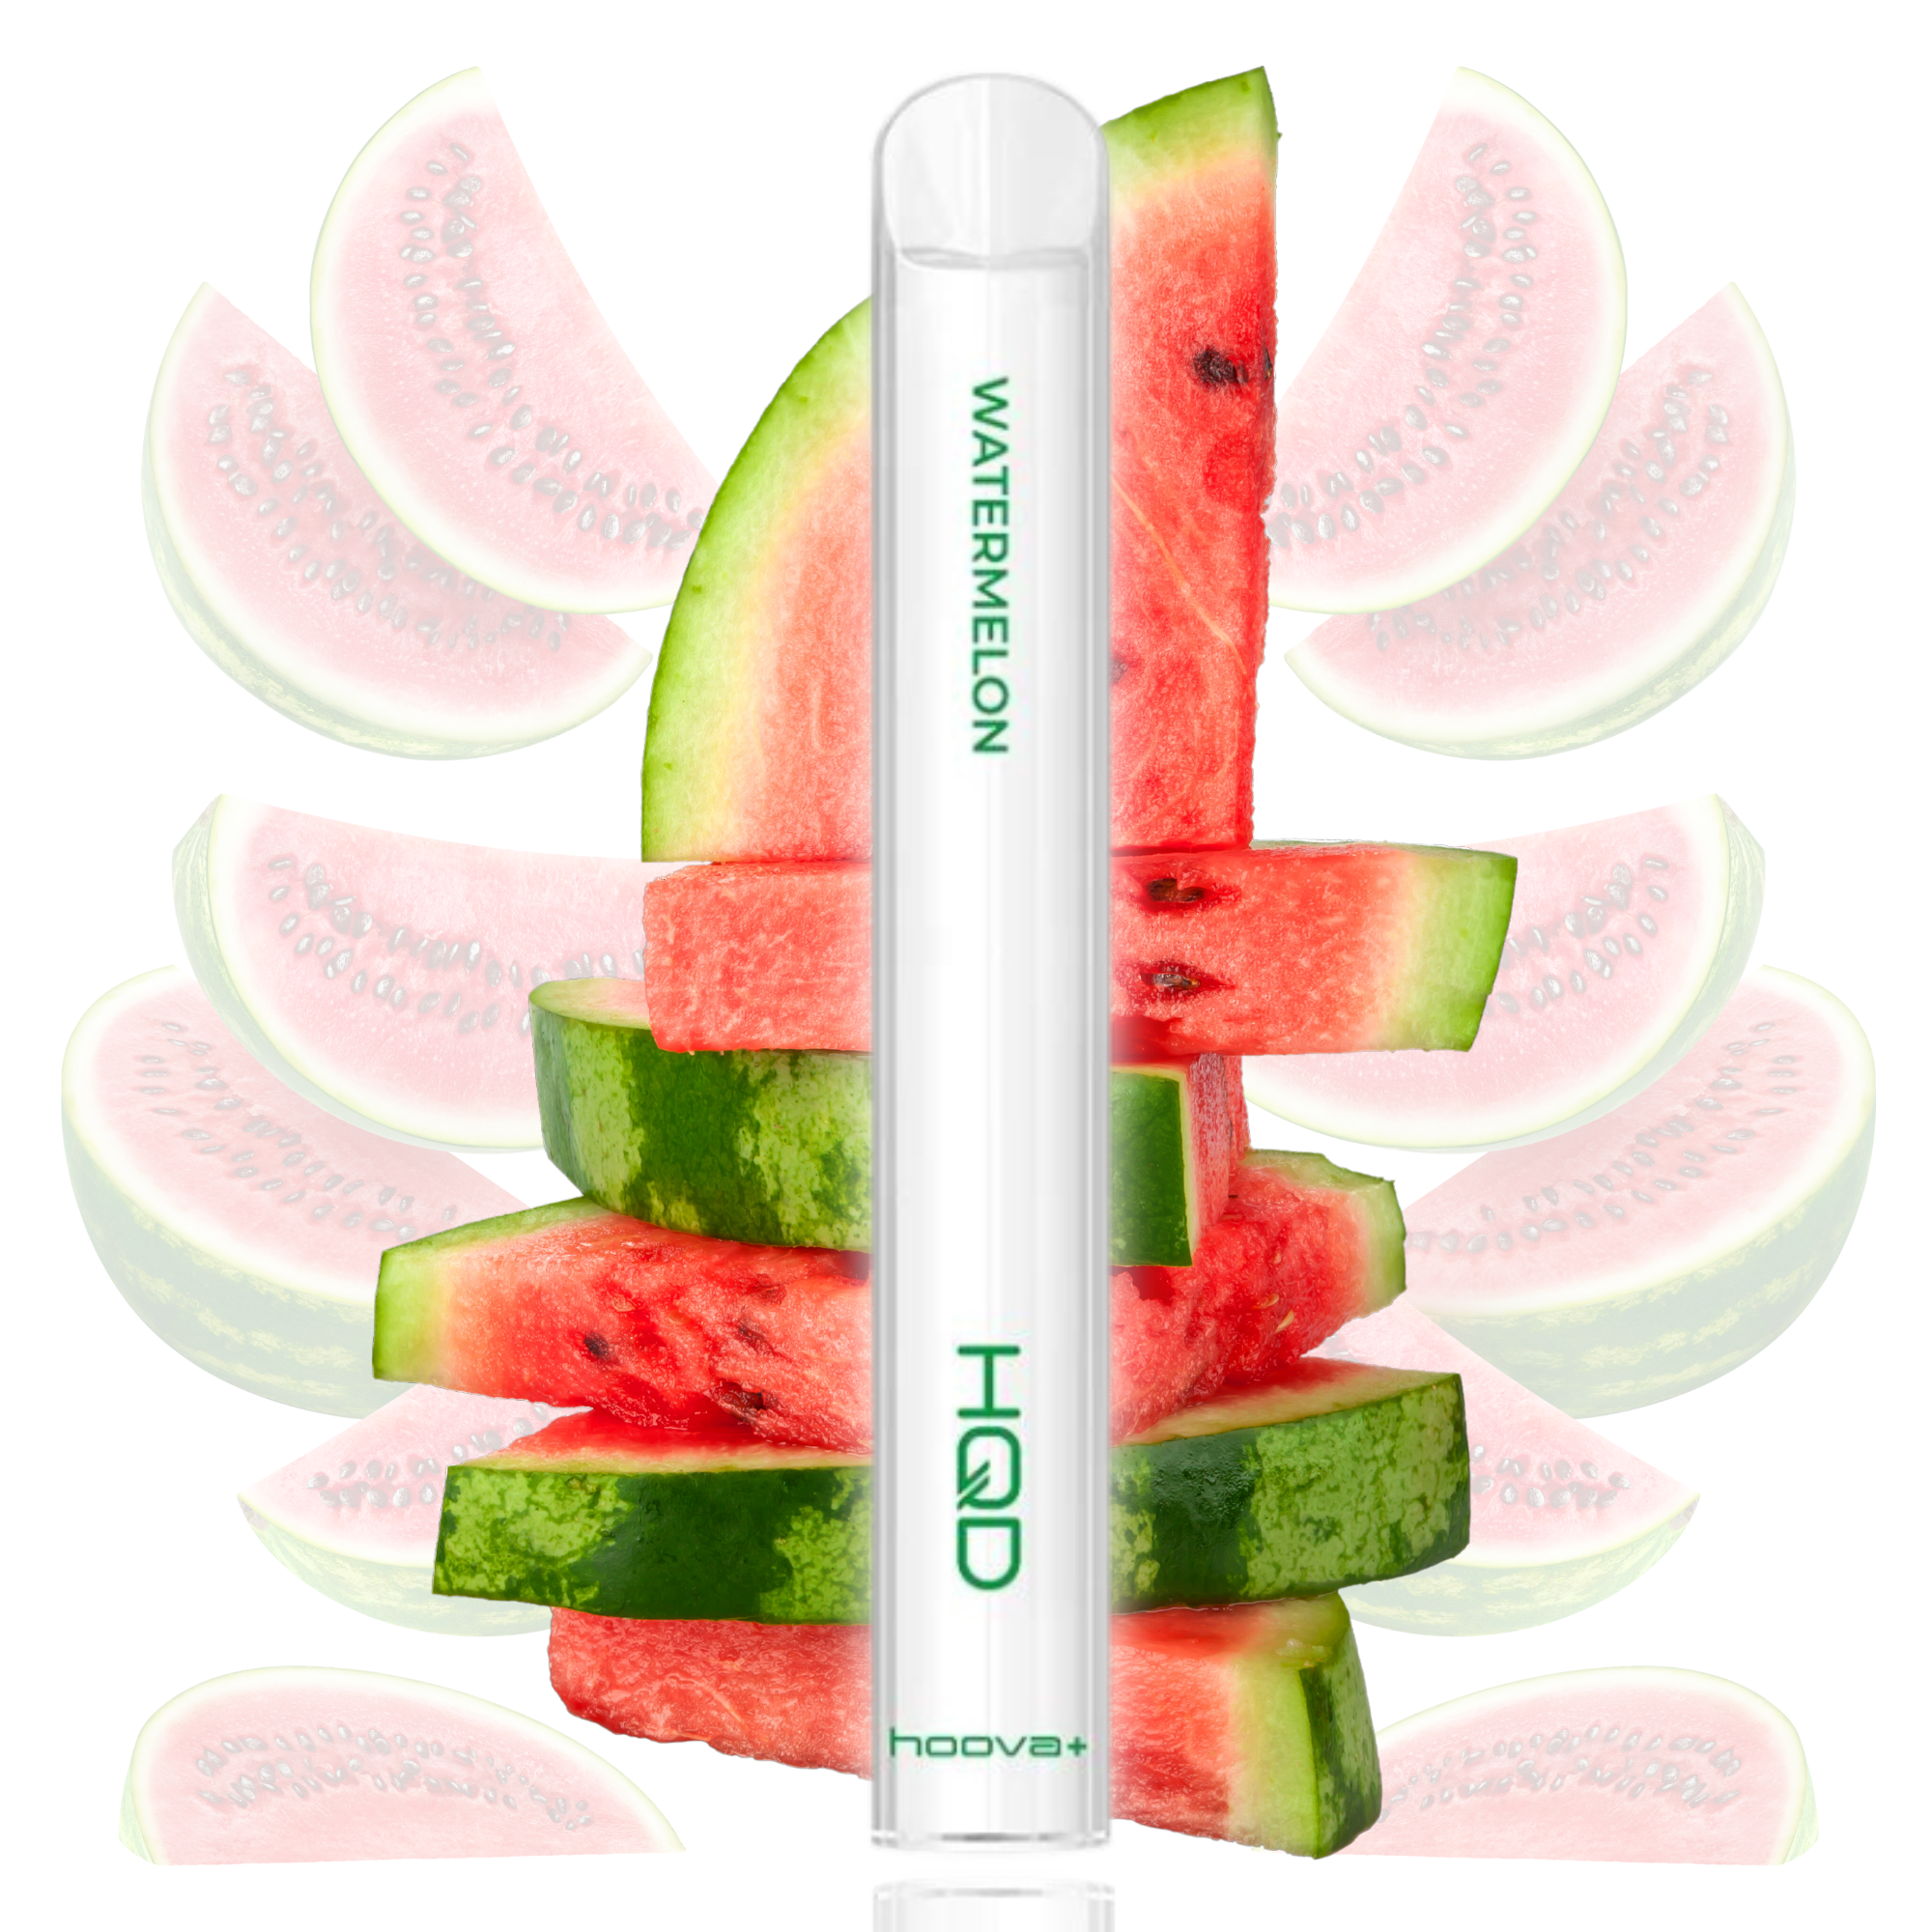 HQD Hoova+ Watermelon 18mg/ml